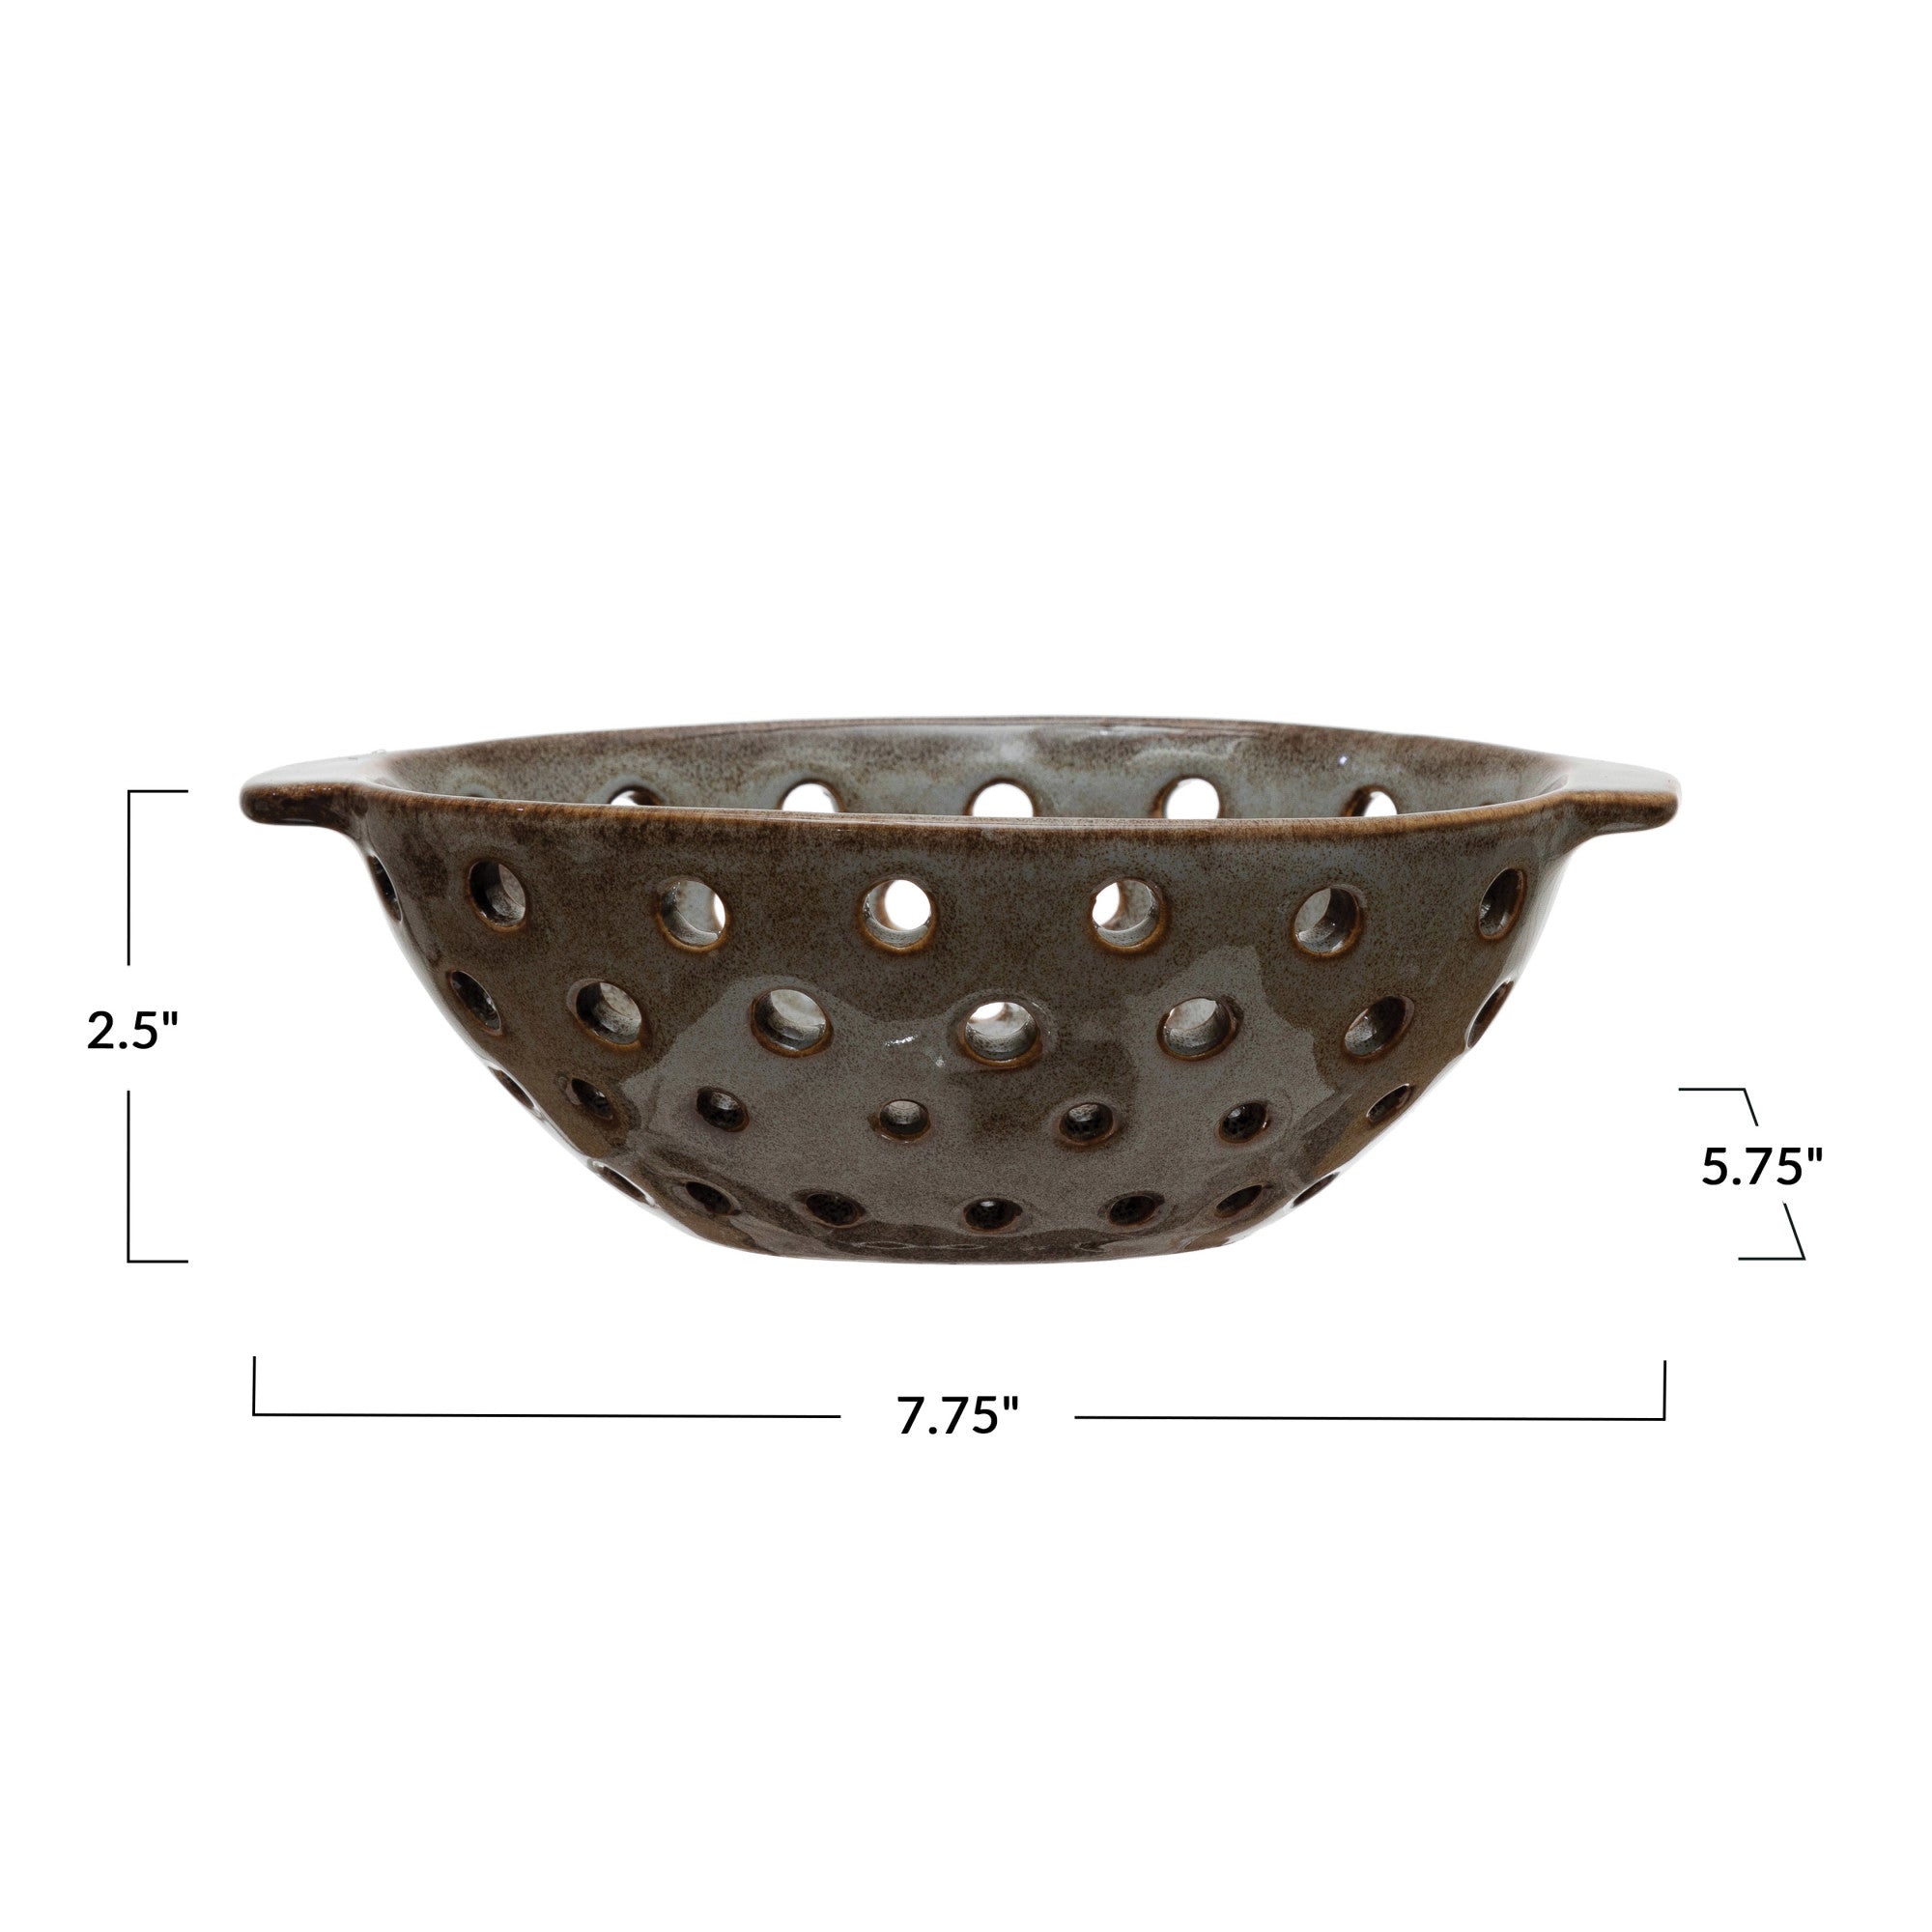 Stoneware Berry Bowl with Glaze